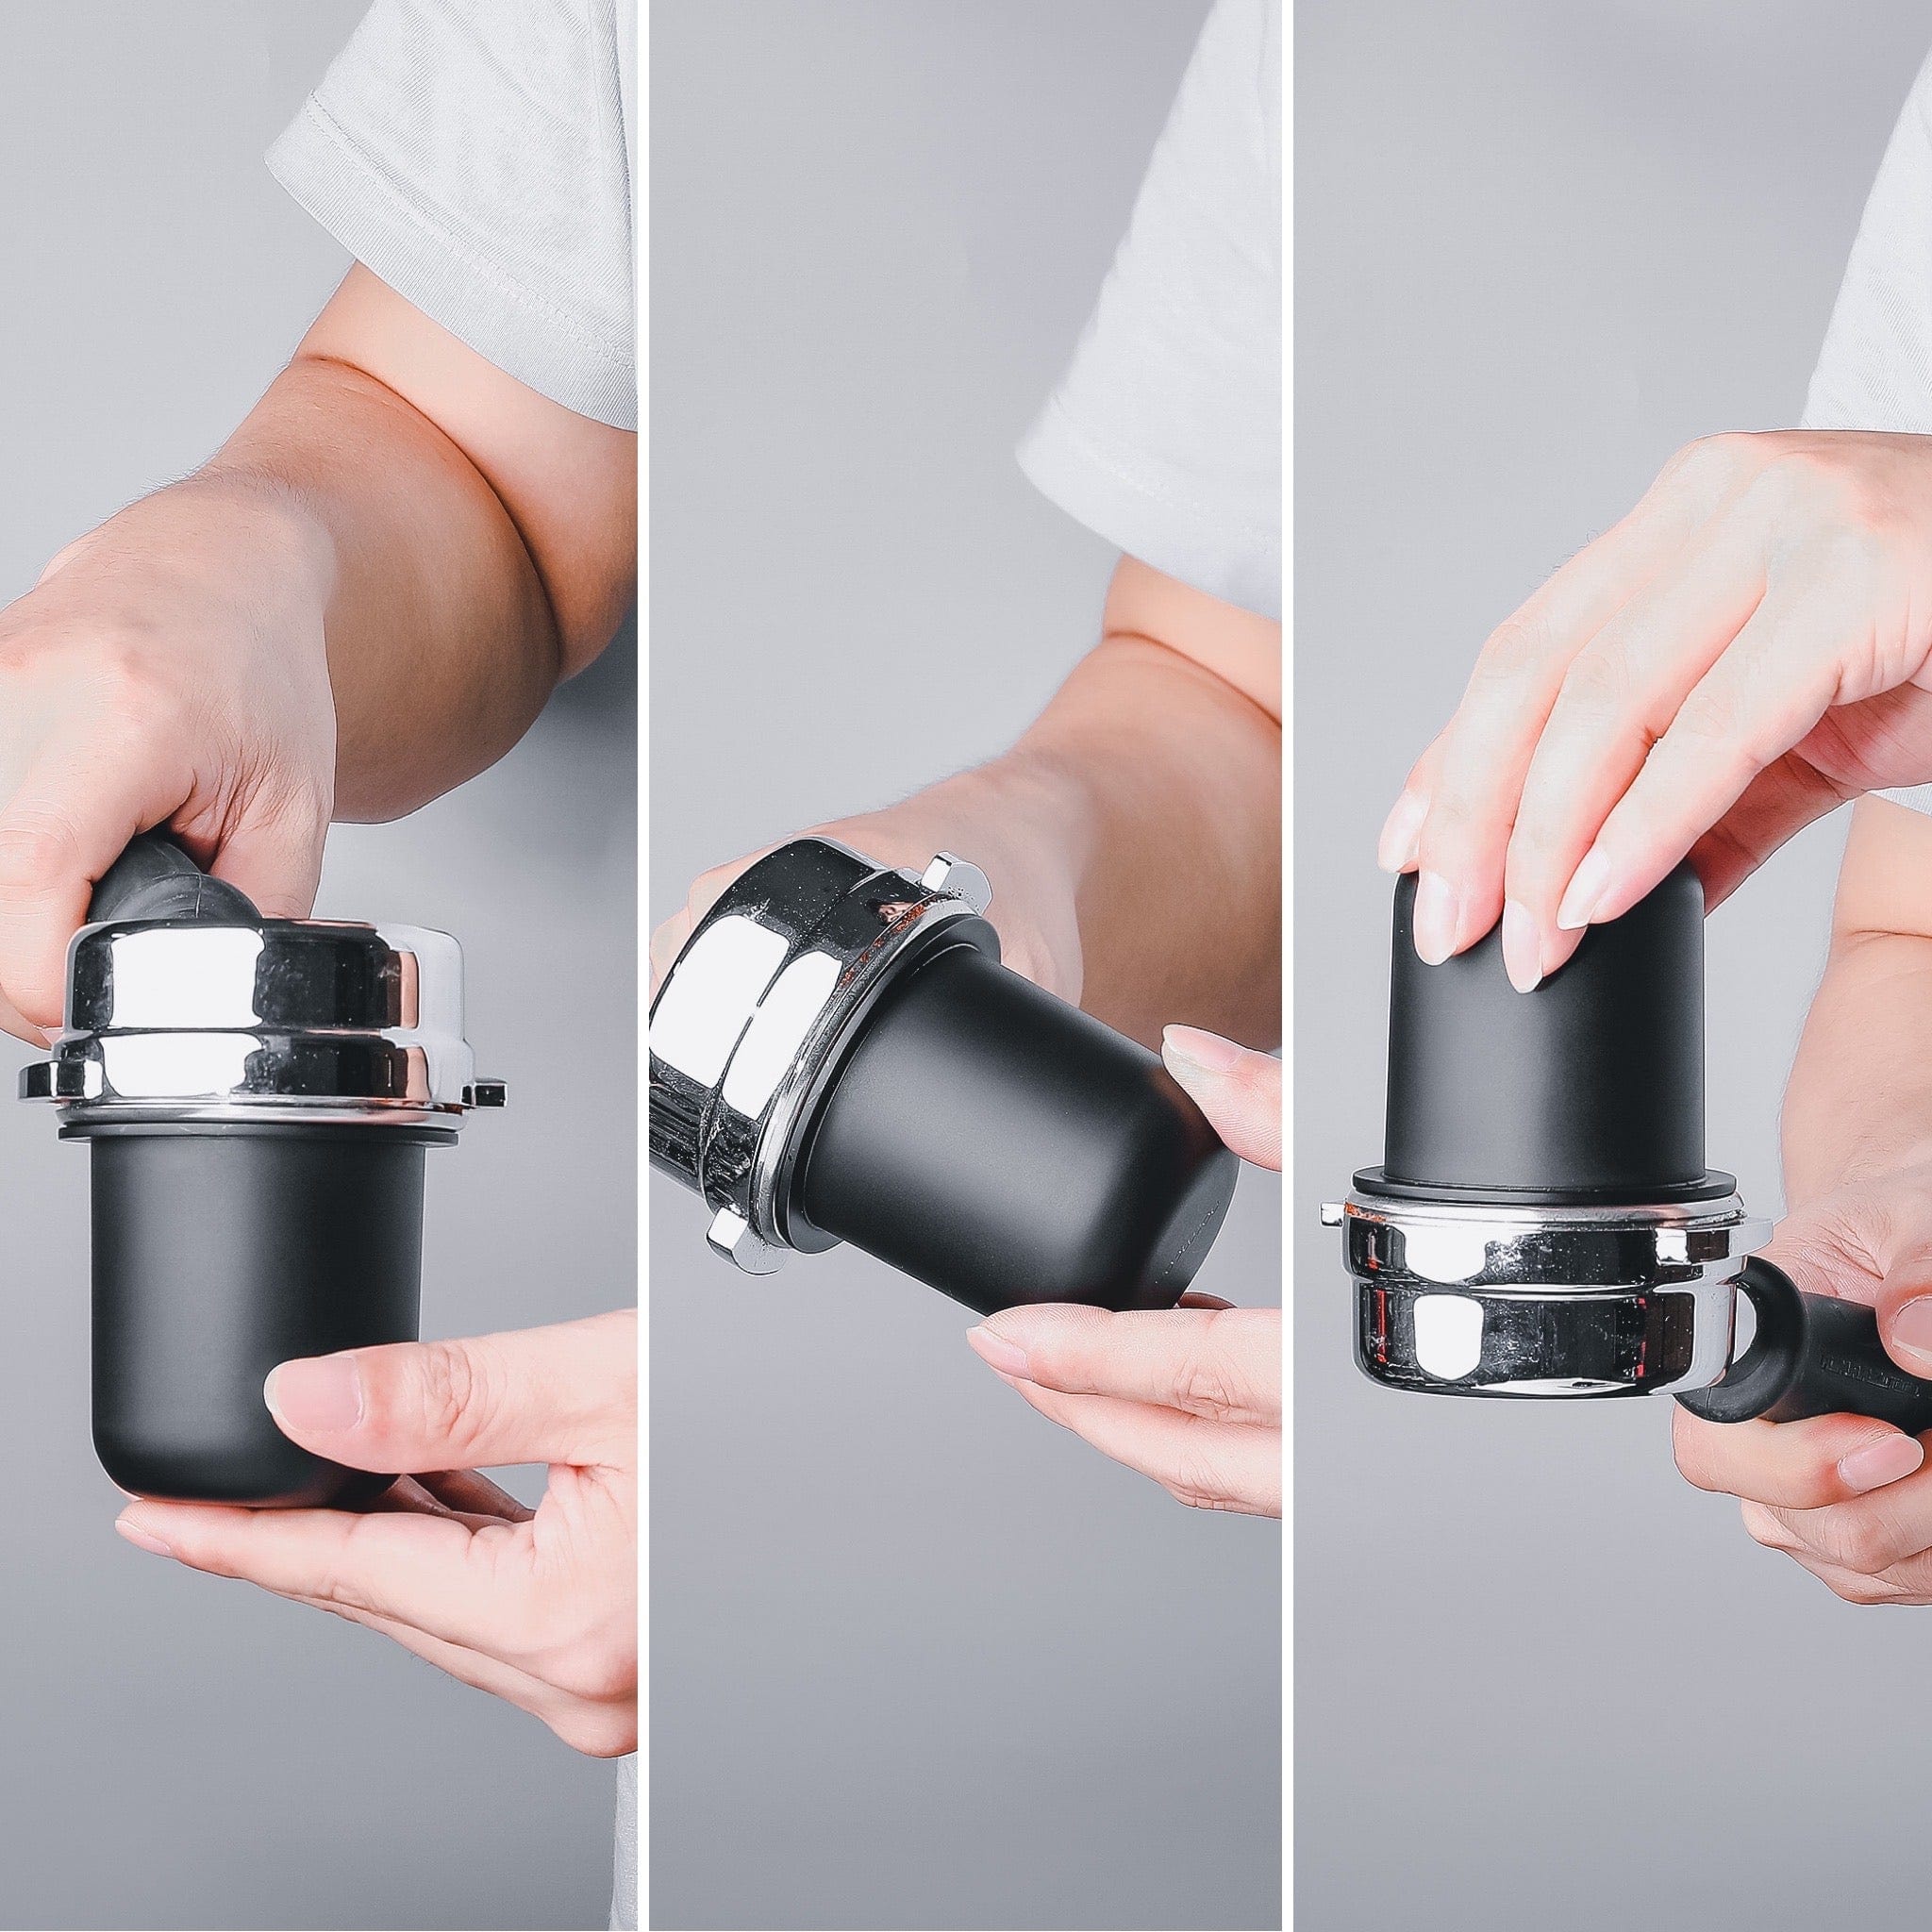 Normcore / 58mm Portafilter Dosing Cup